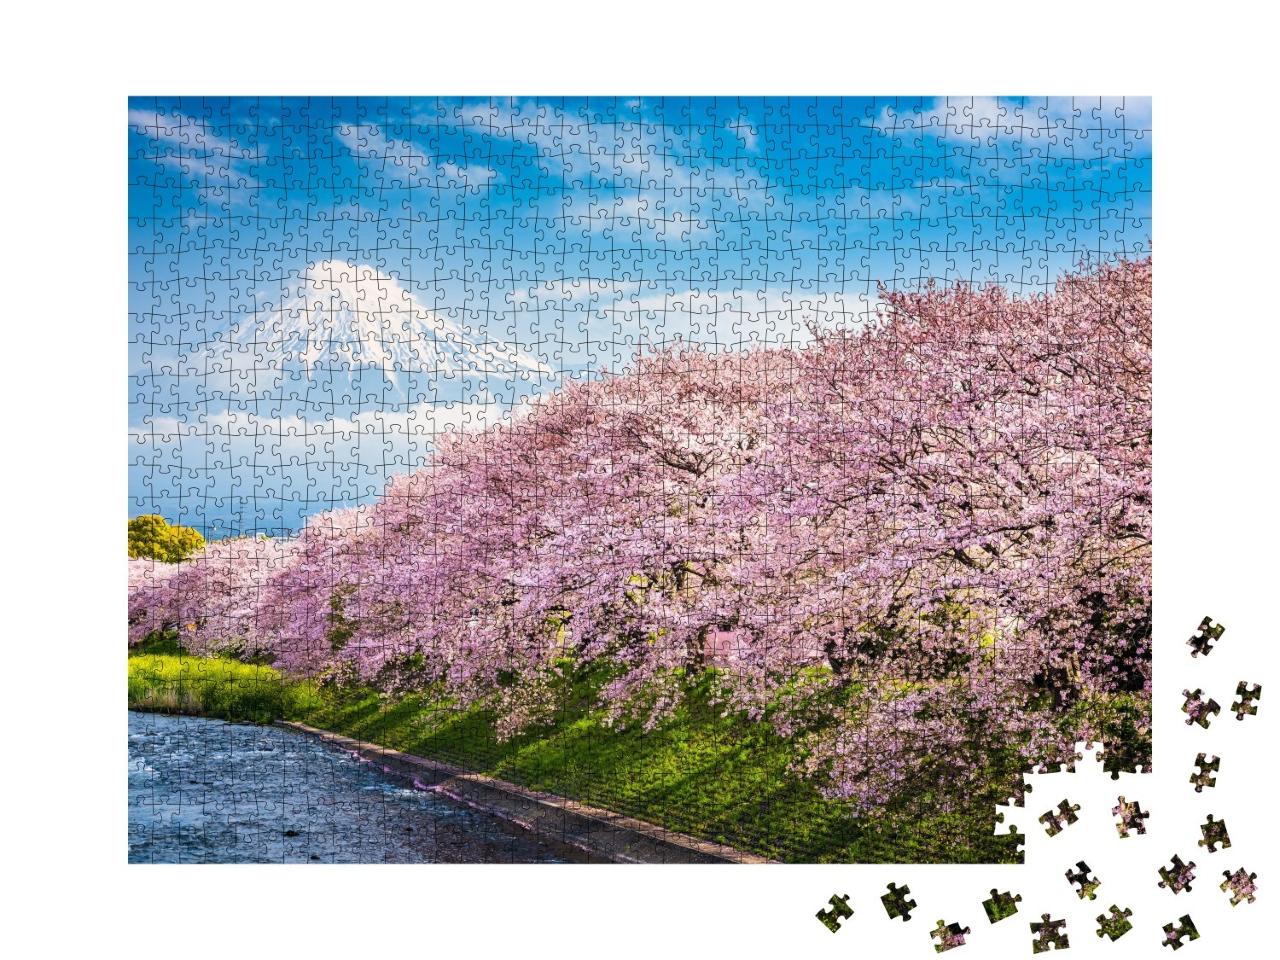 Puzzle de 1000 pièces « Mont Fuji, au premier plan Sakura, la fleur de cerisier japonaise »